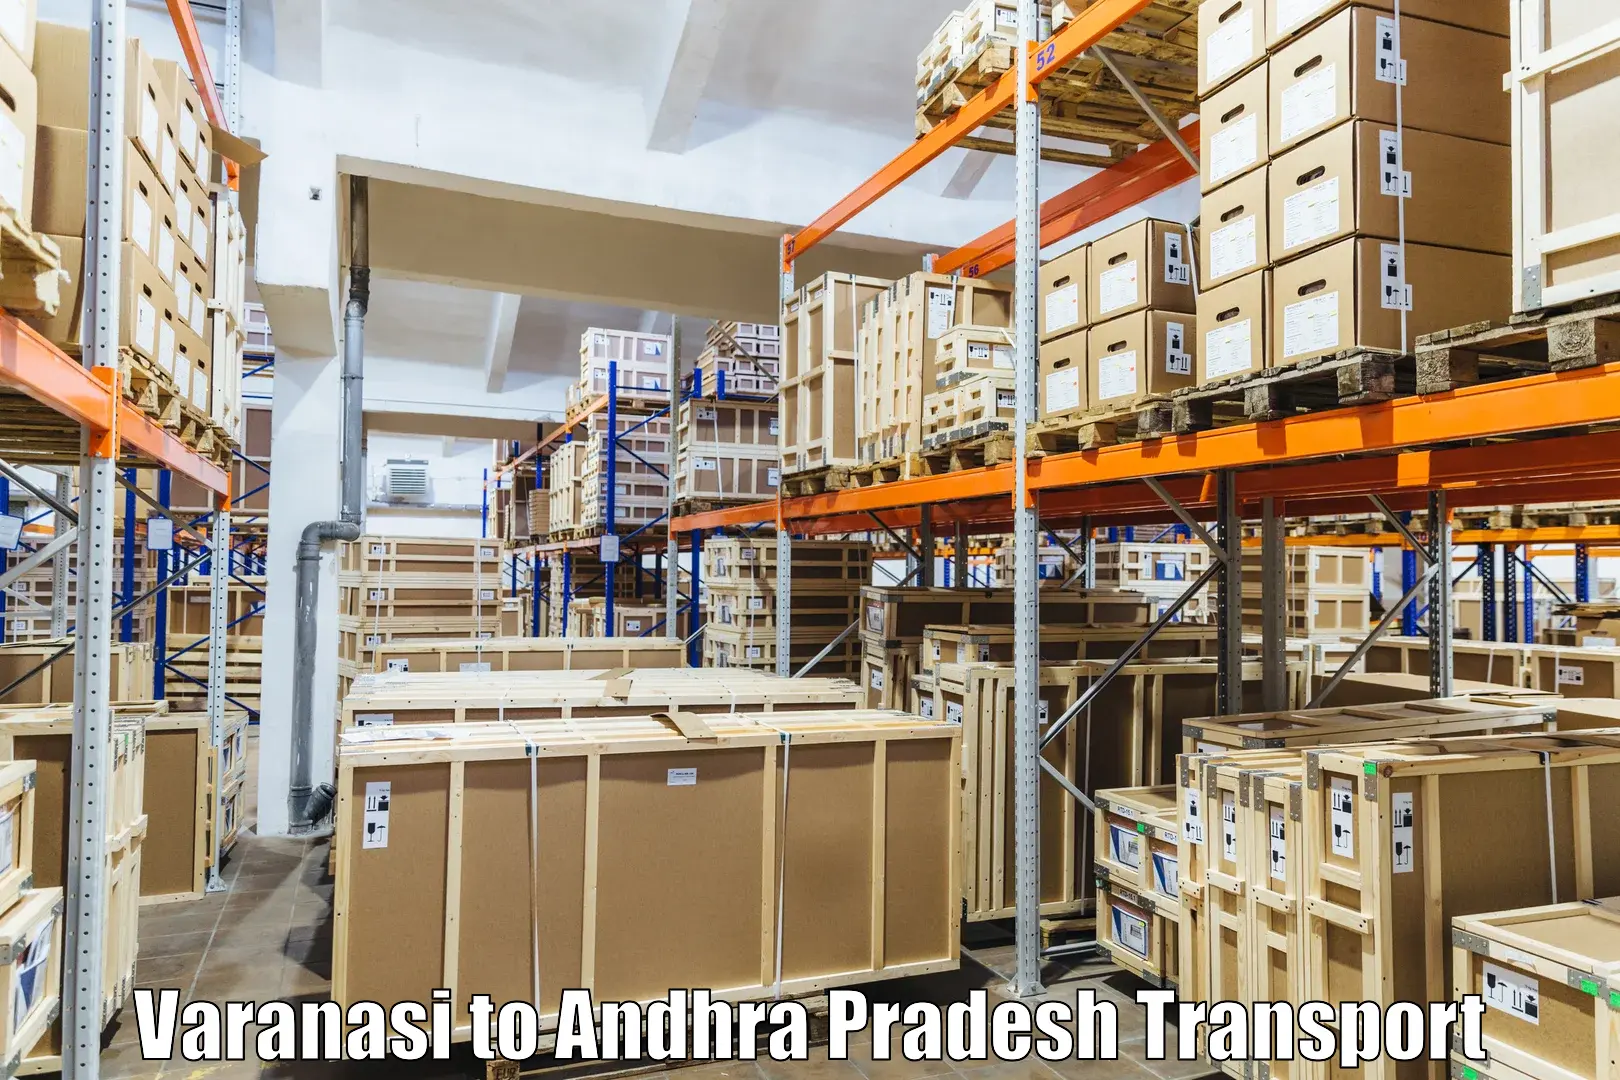 Commercial transport service Varanasi to Bapatla